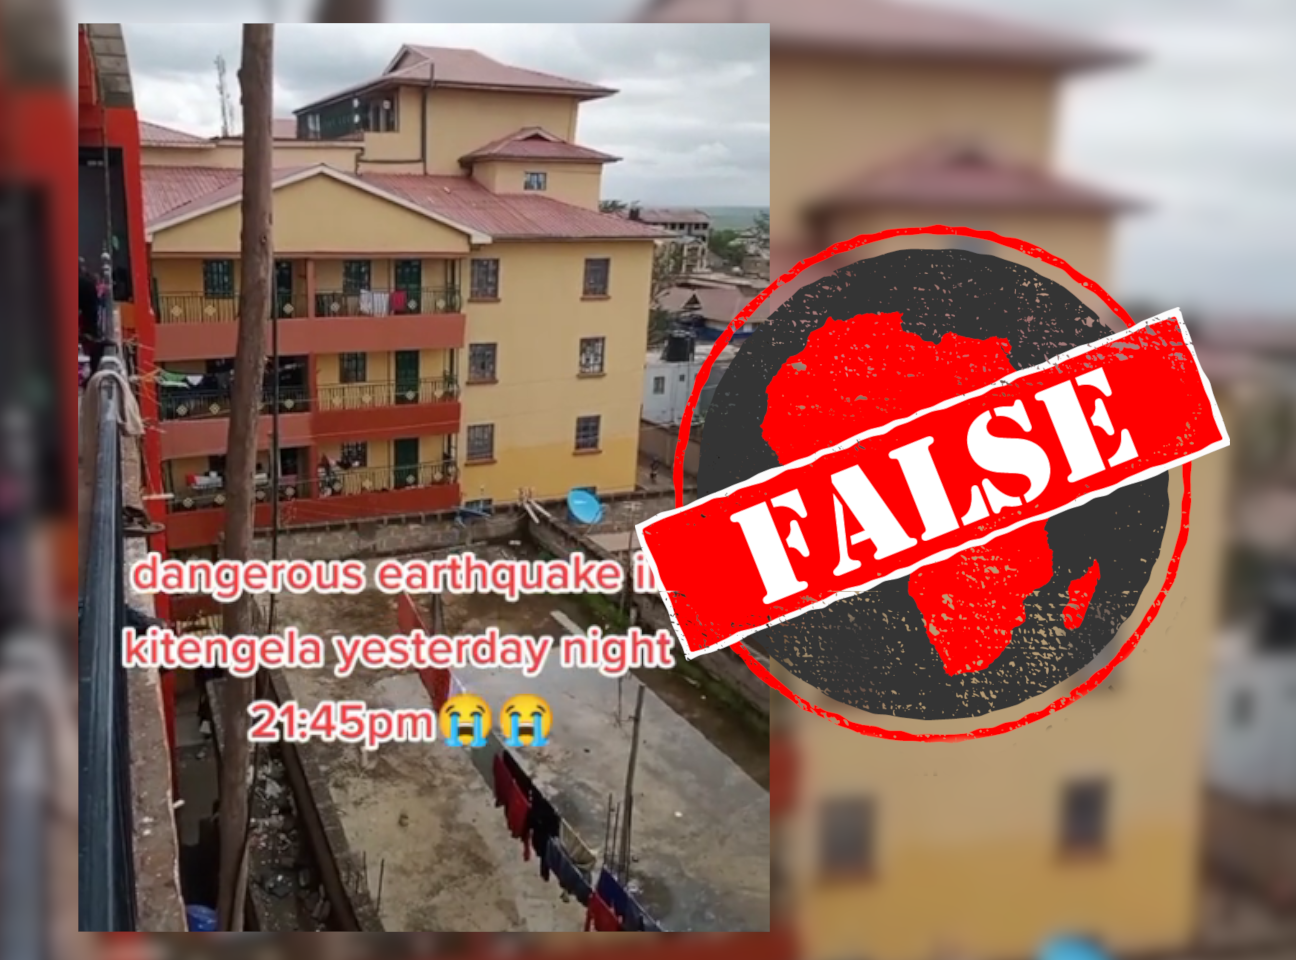 KenyaEarthquake_False